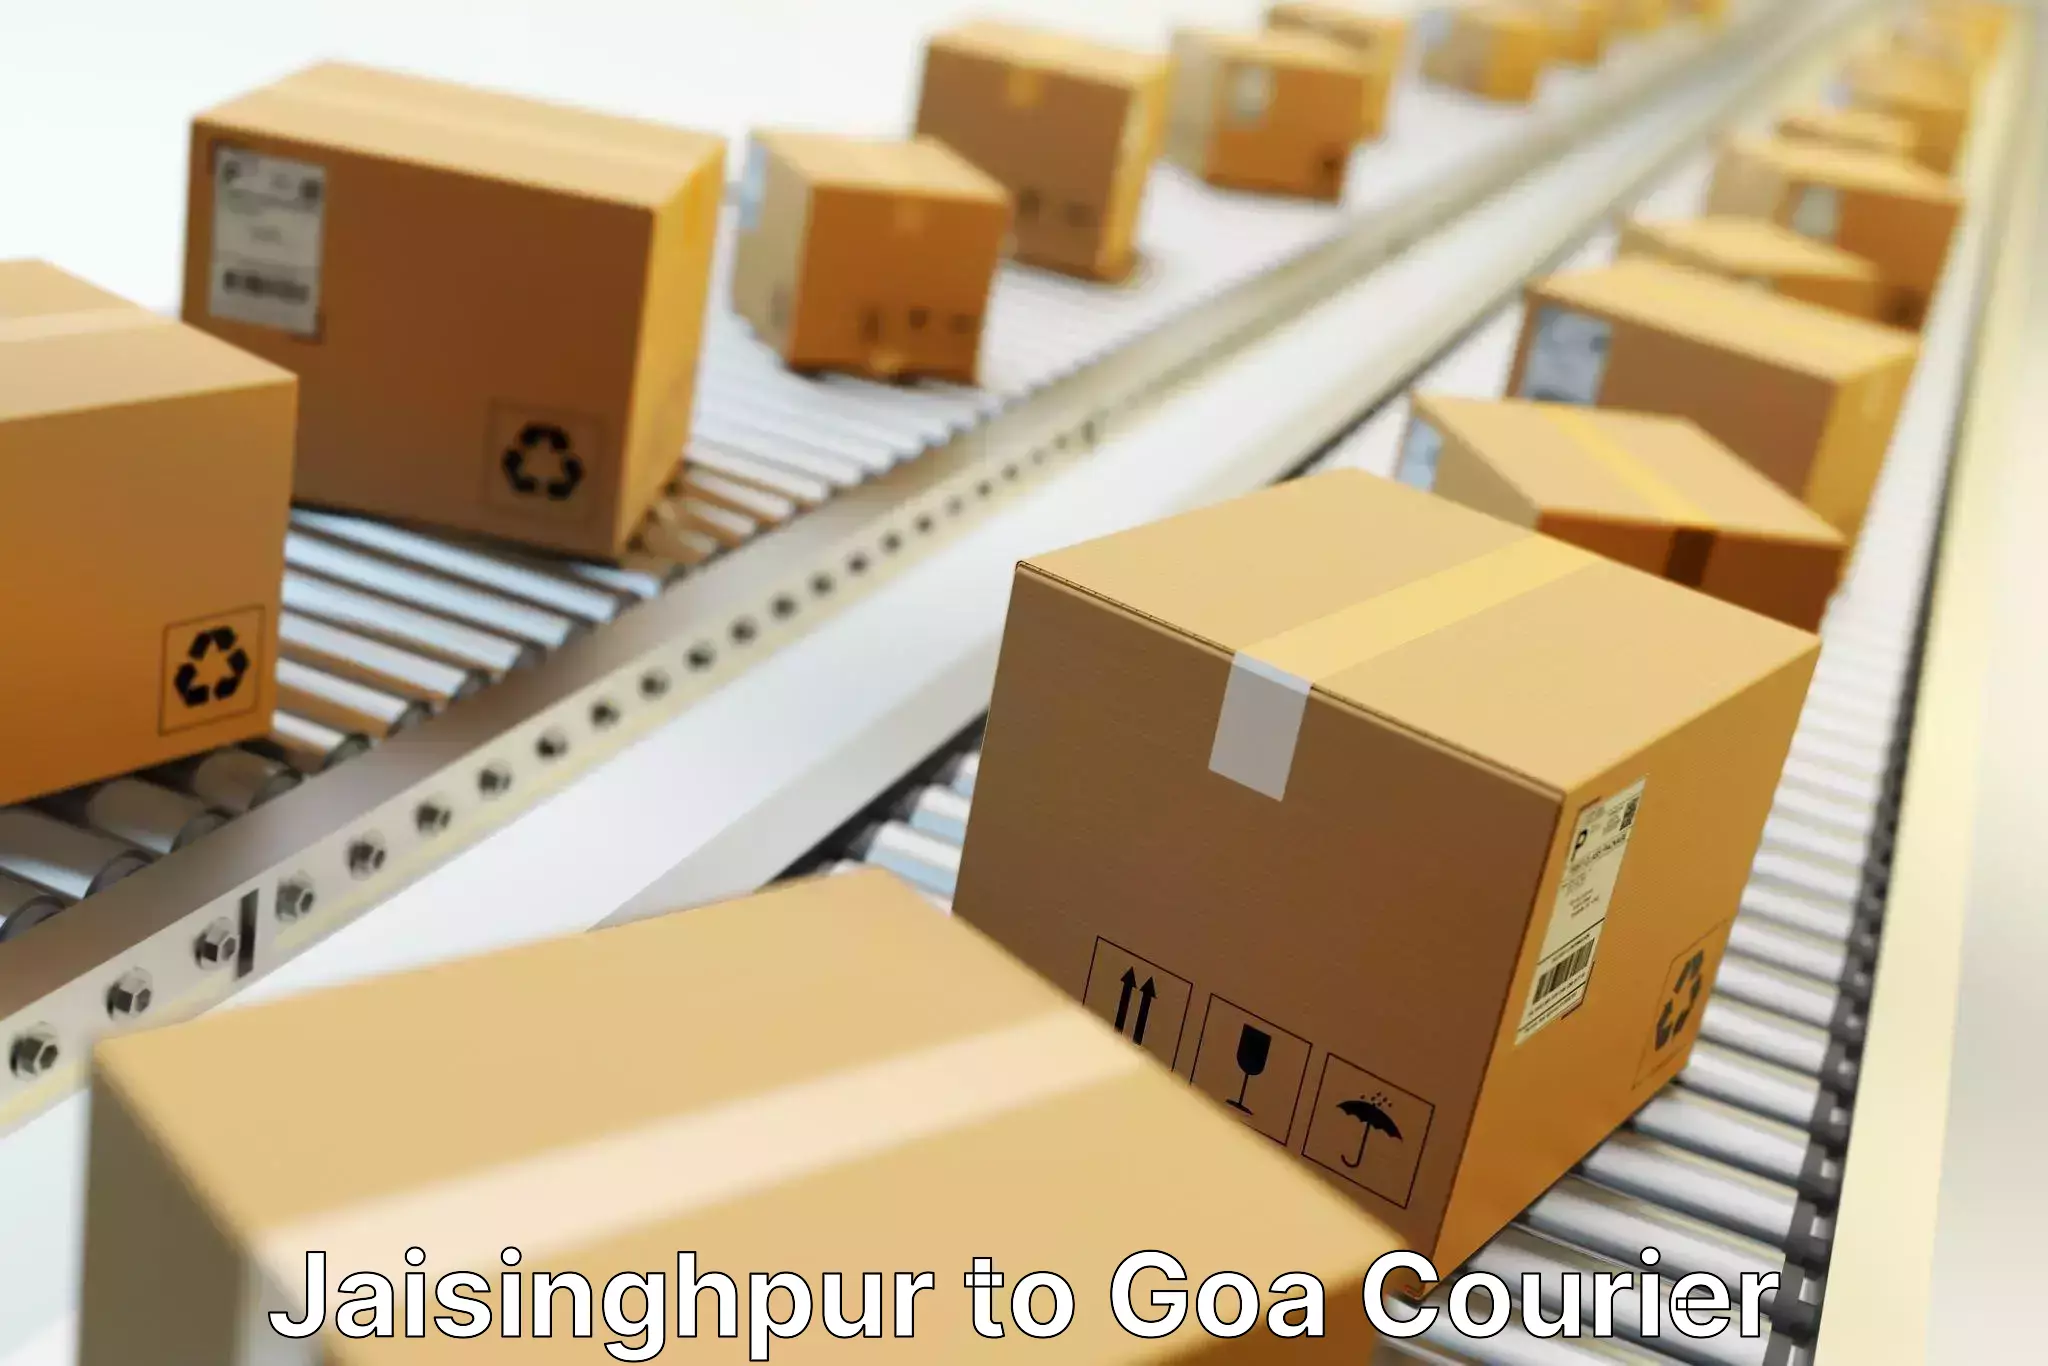 Special handling courier Jaisinghpur to NIT Goa